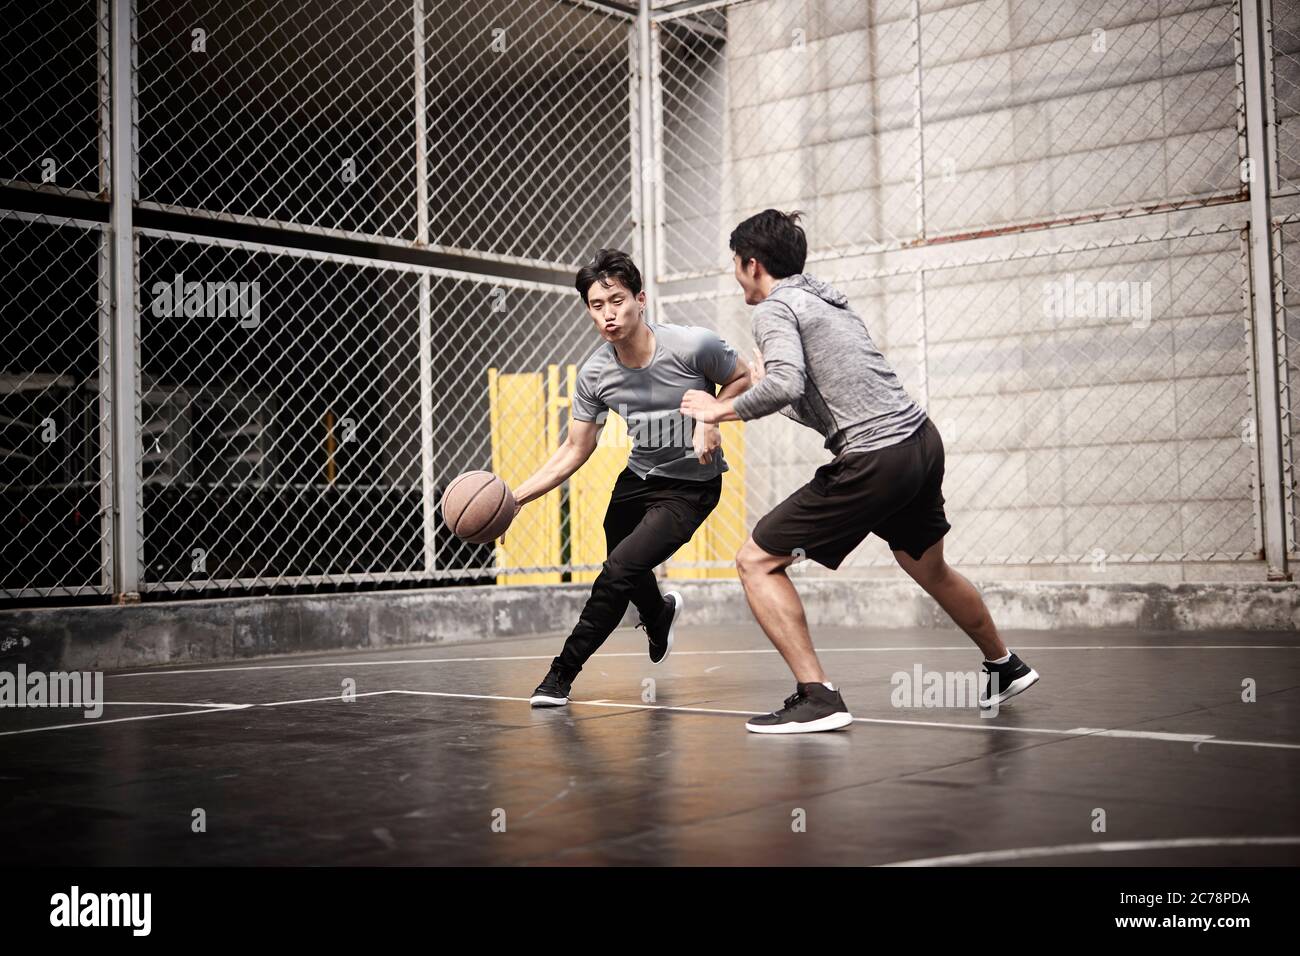 deux jeunes hommes adultes asiatiques jouant au basketball en tête-à-tête sur un terrain extérieur Banque D'Images